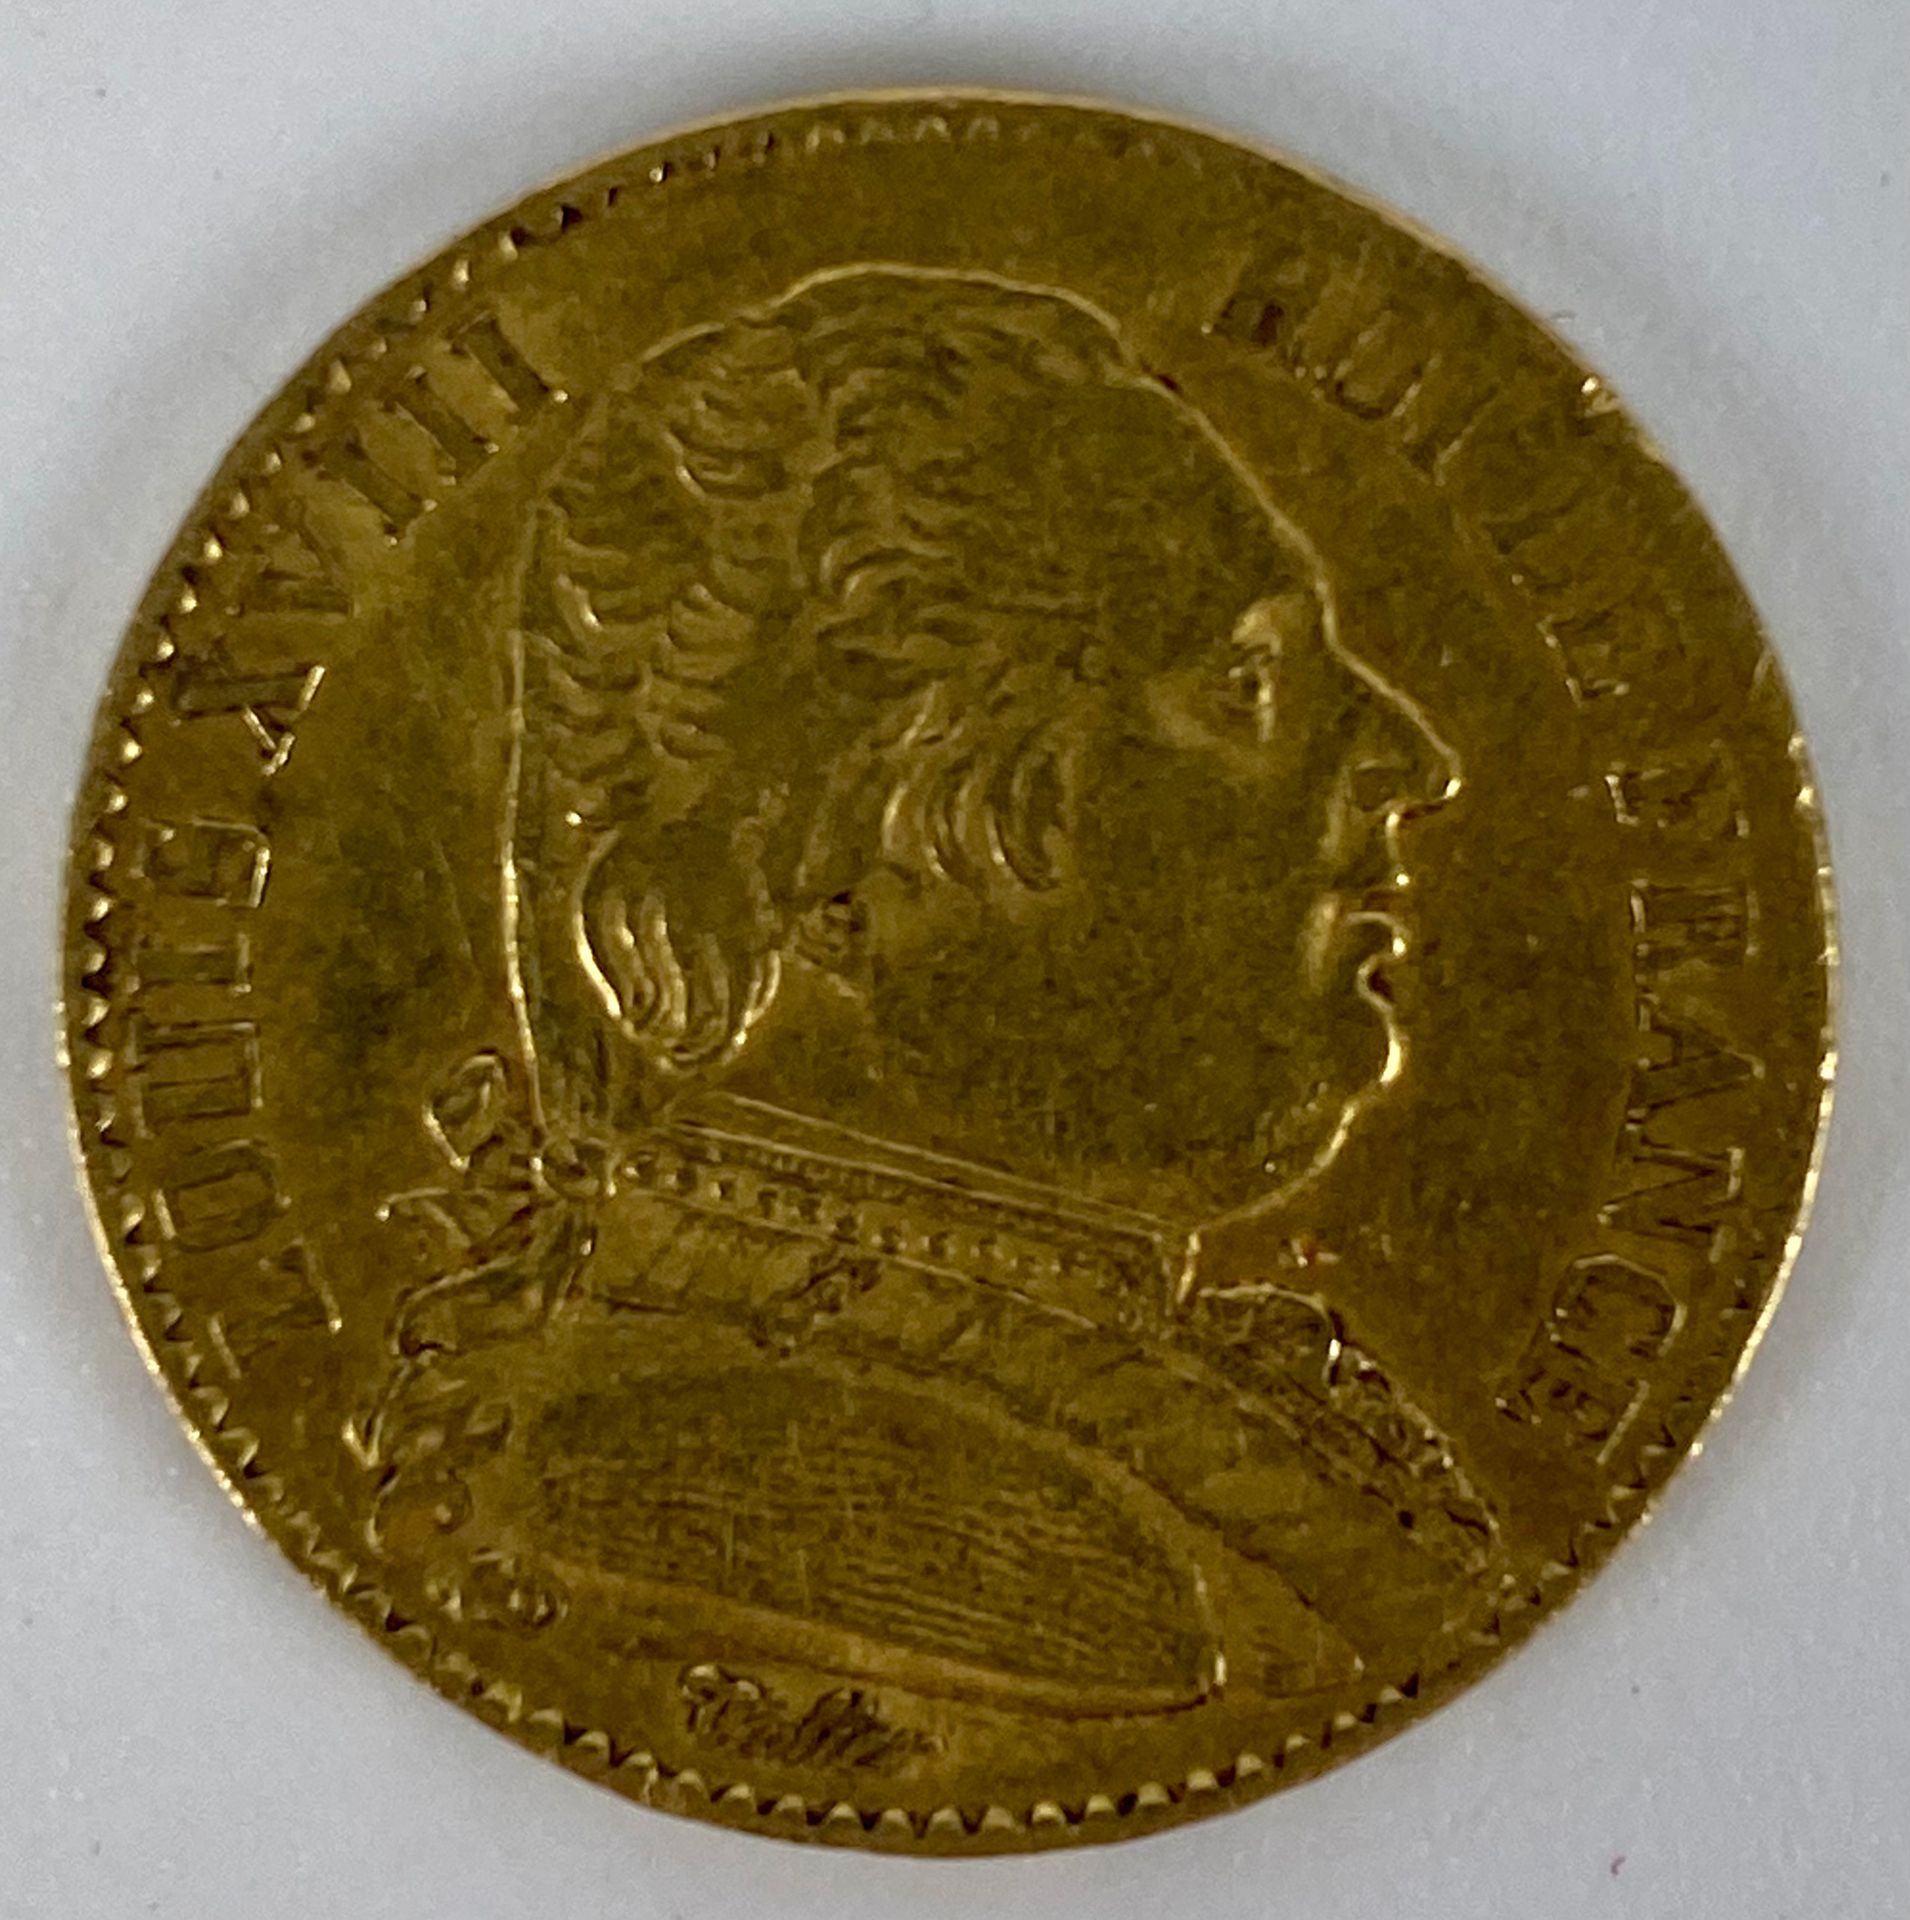 Null LOUIS XVIII (1755-1824) 20 francos de oro 1815 Peso: 7 g